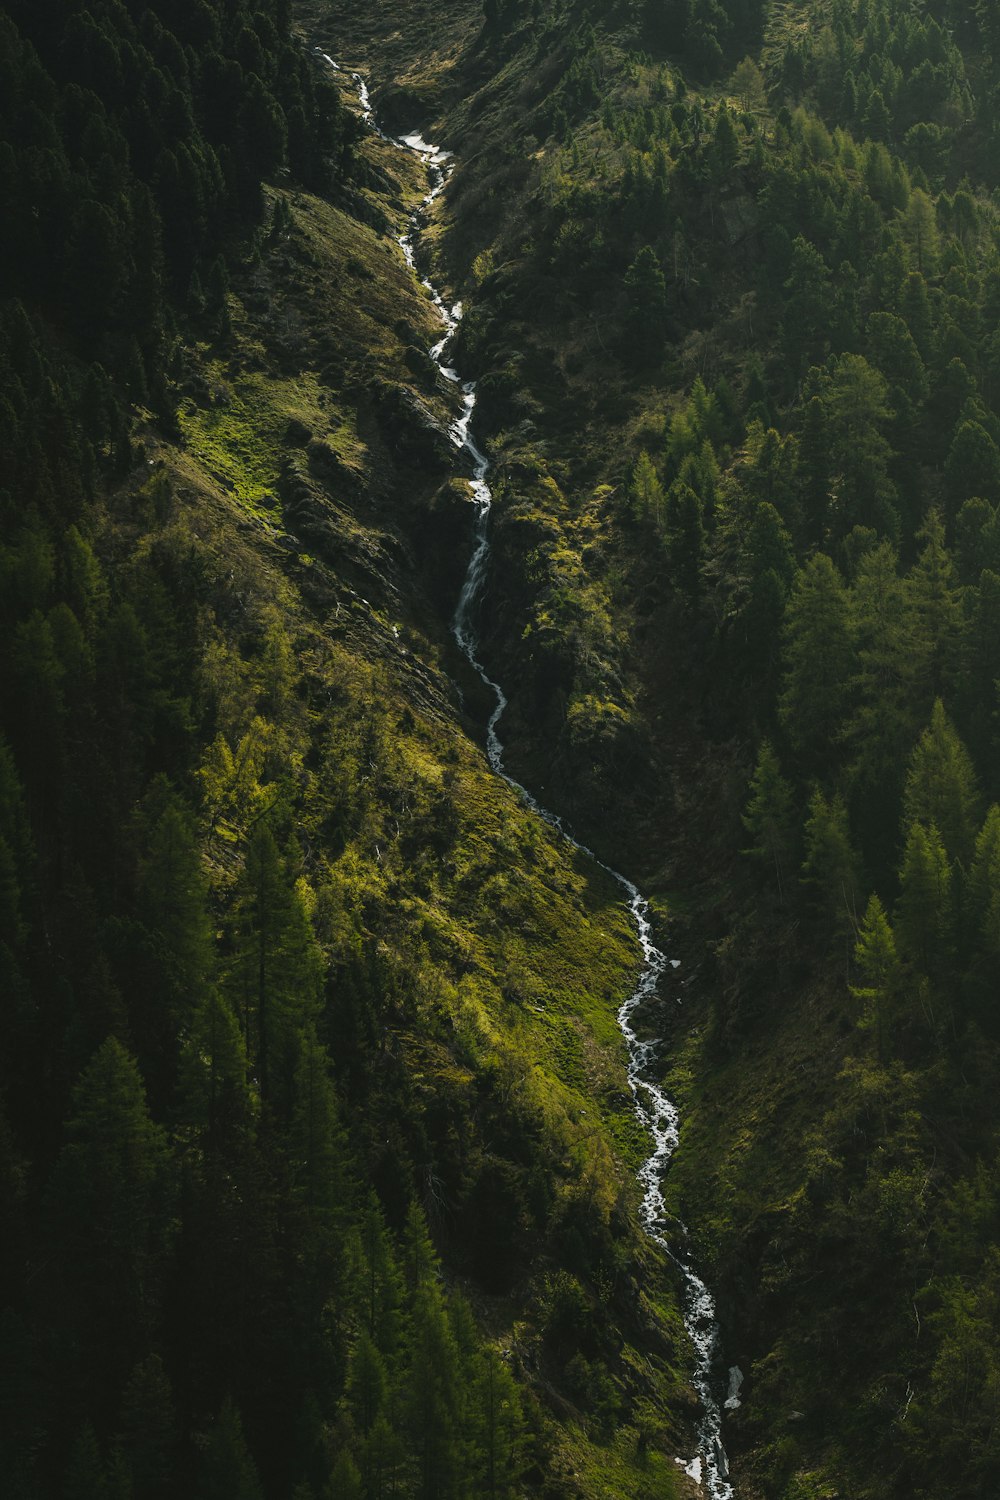 L’eau tombe au milieu de la montagne verte et brune